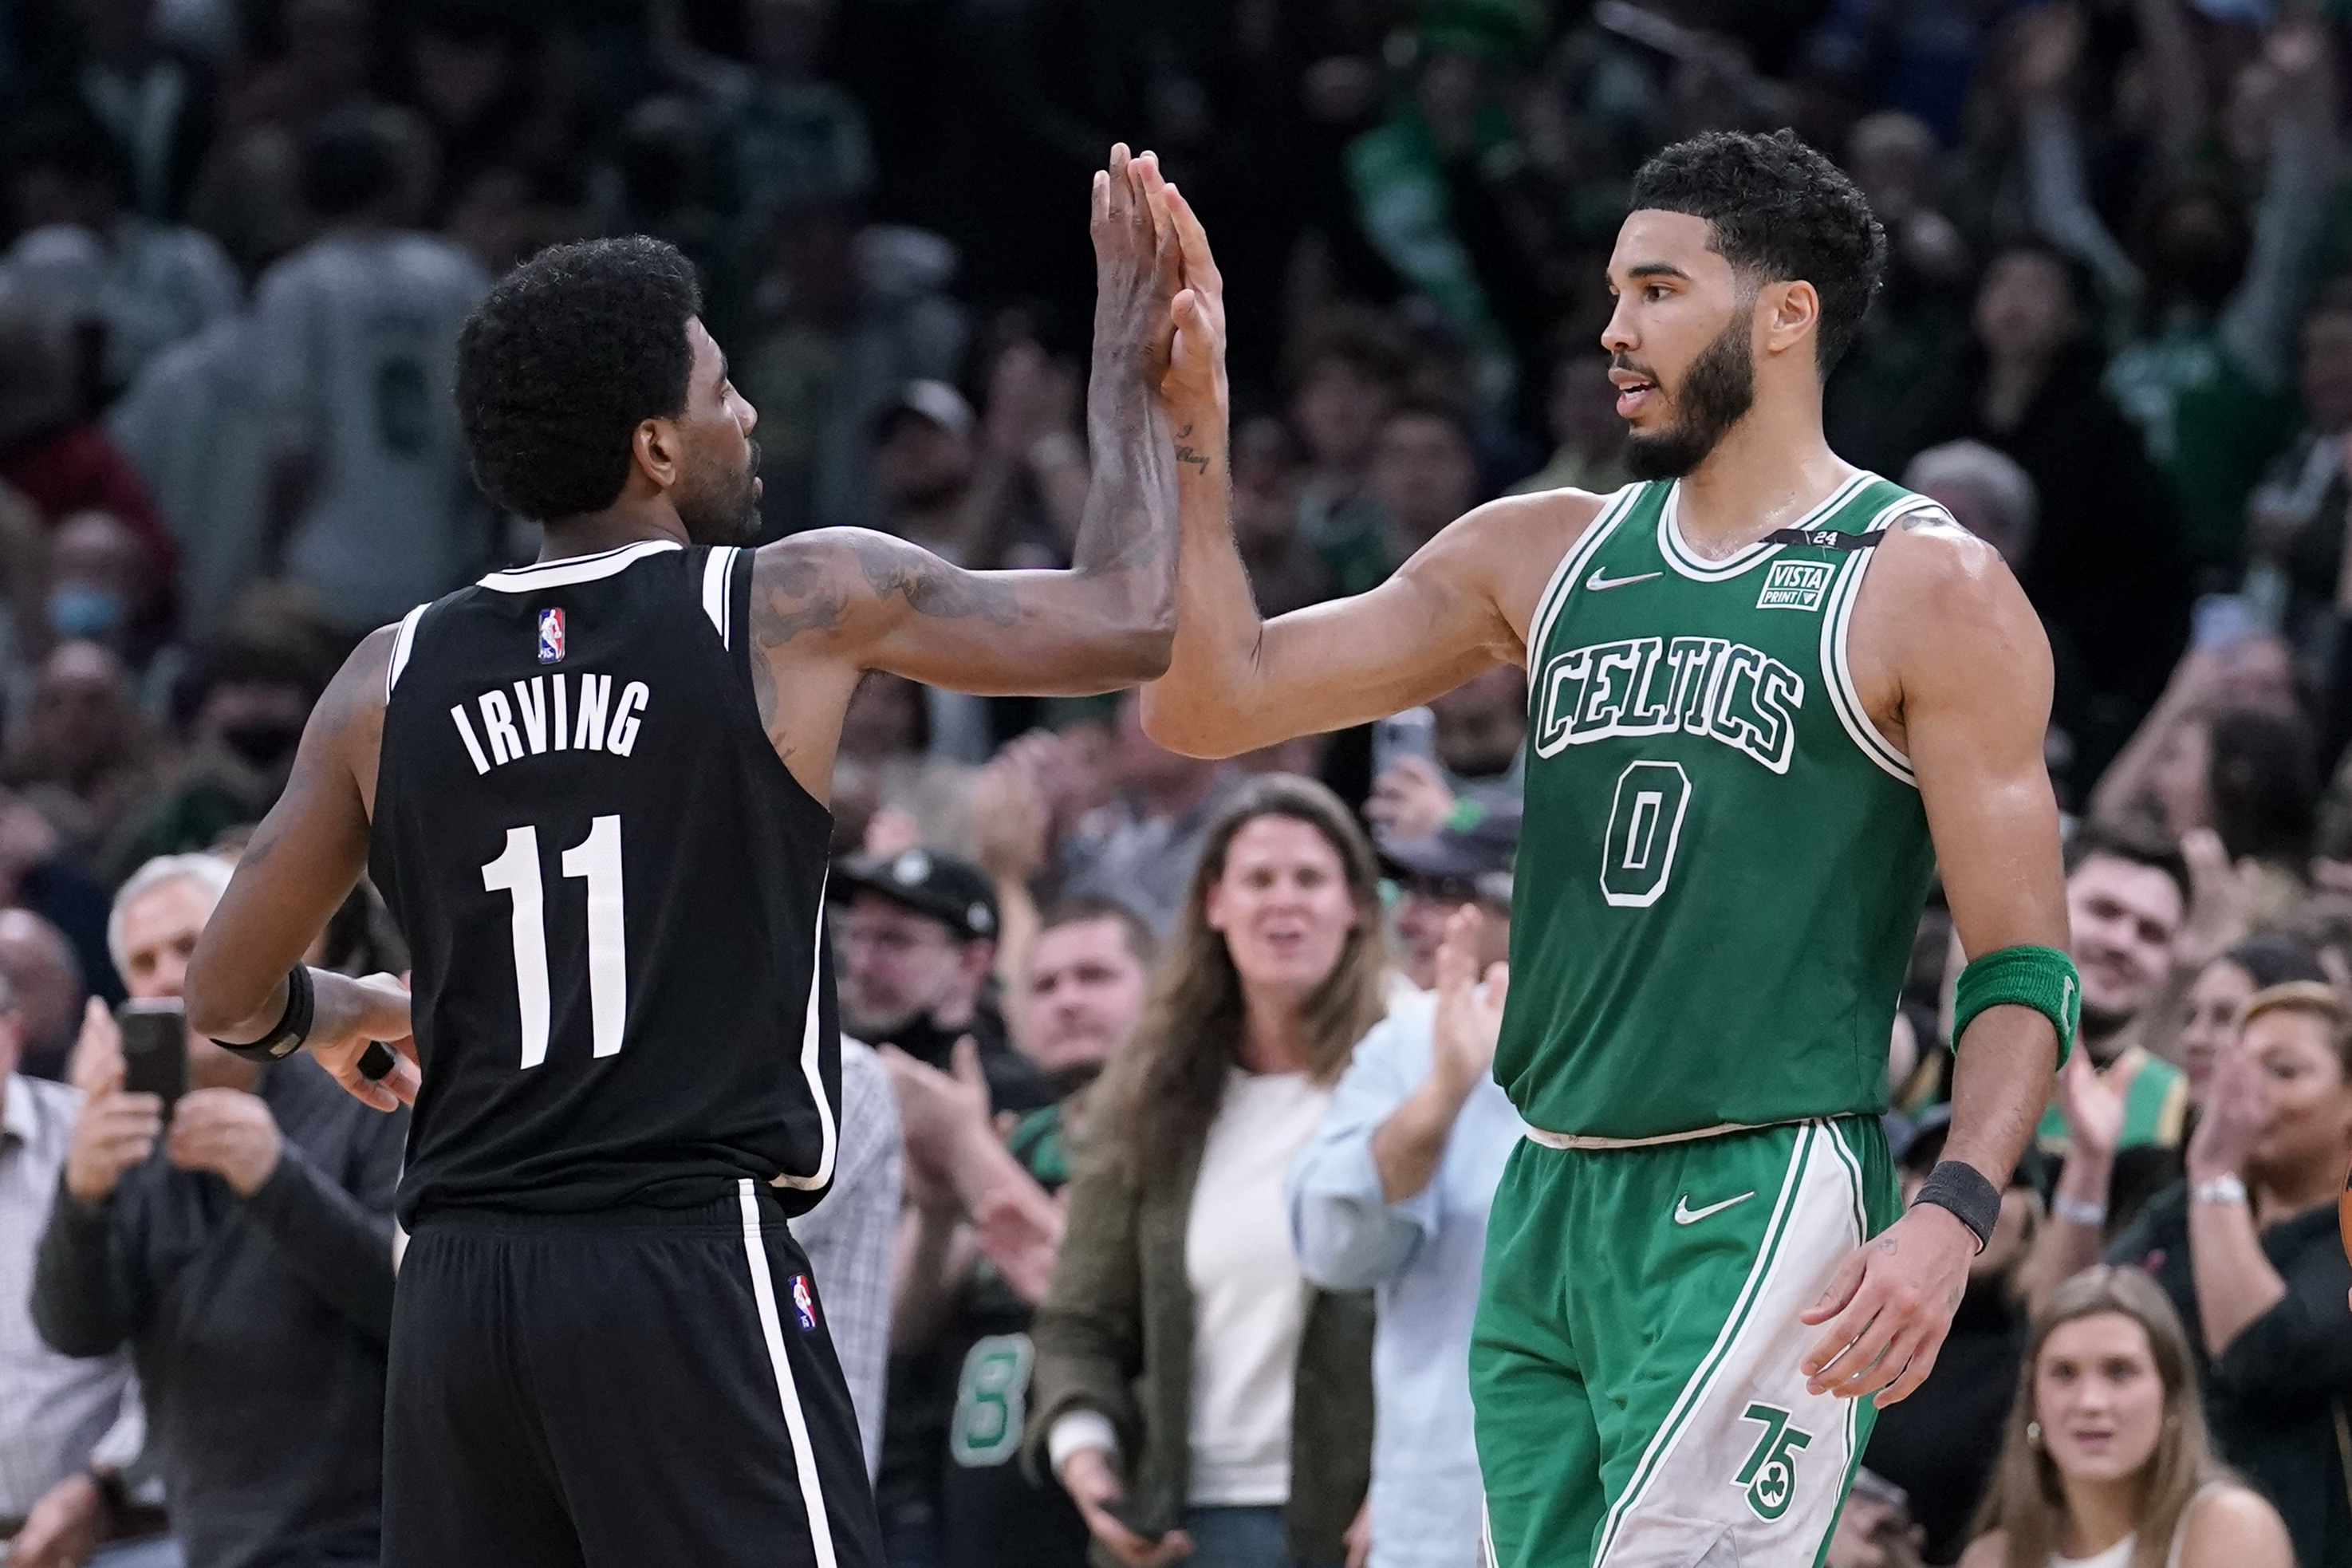 Boston Celtics vence Brooklyn Nets em jogo de líderes e disparam na NBA -  Estadão